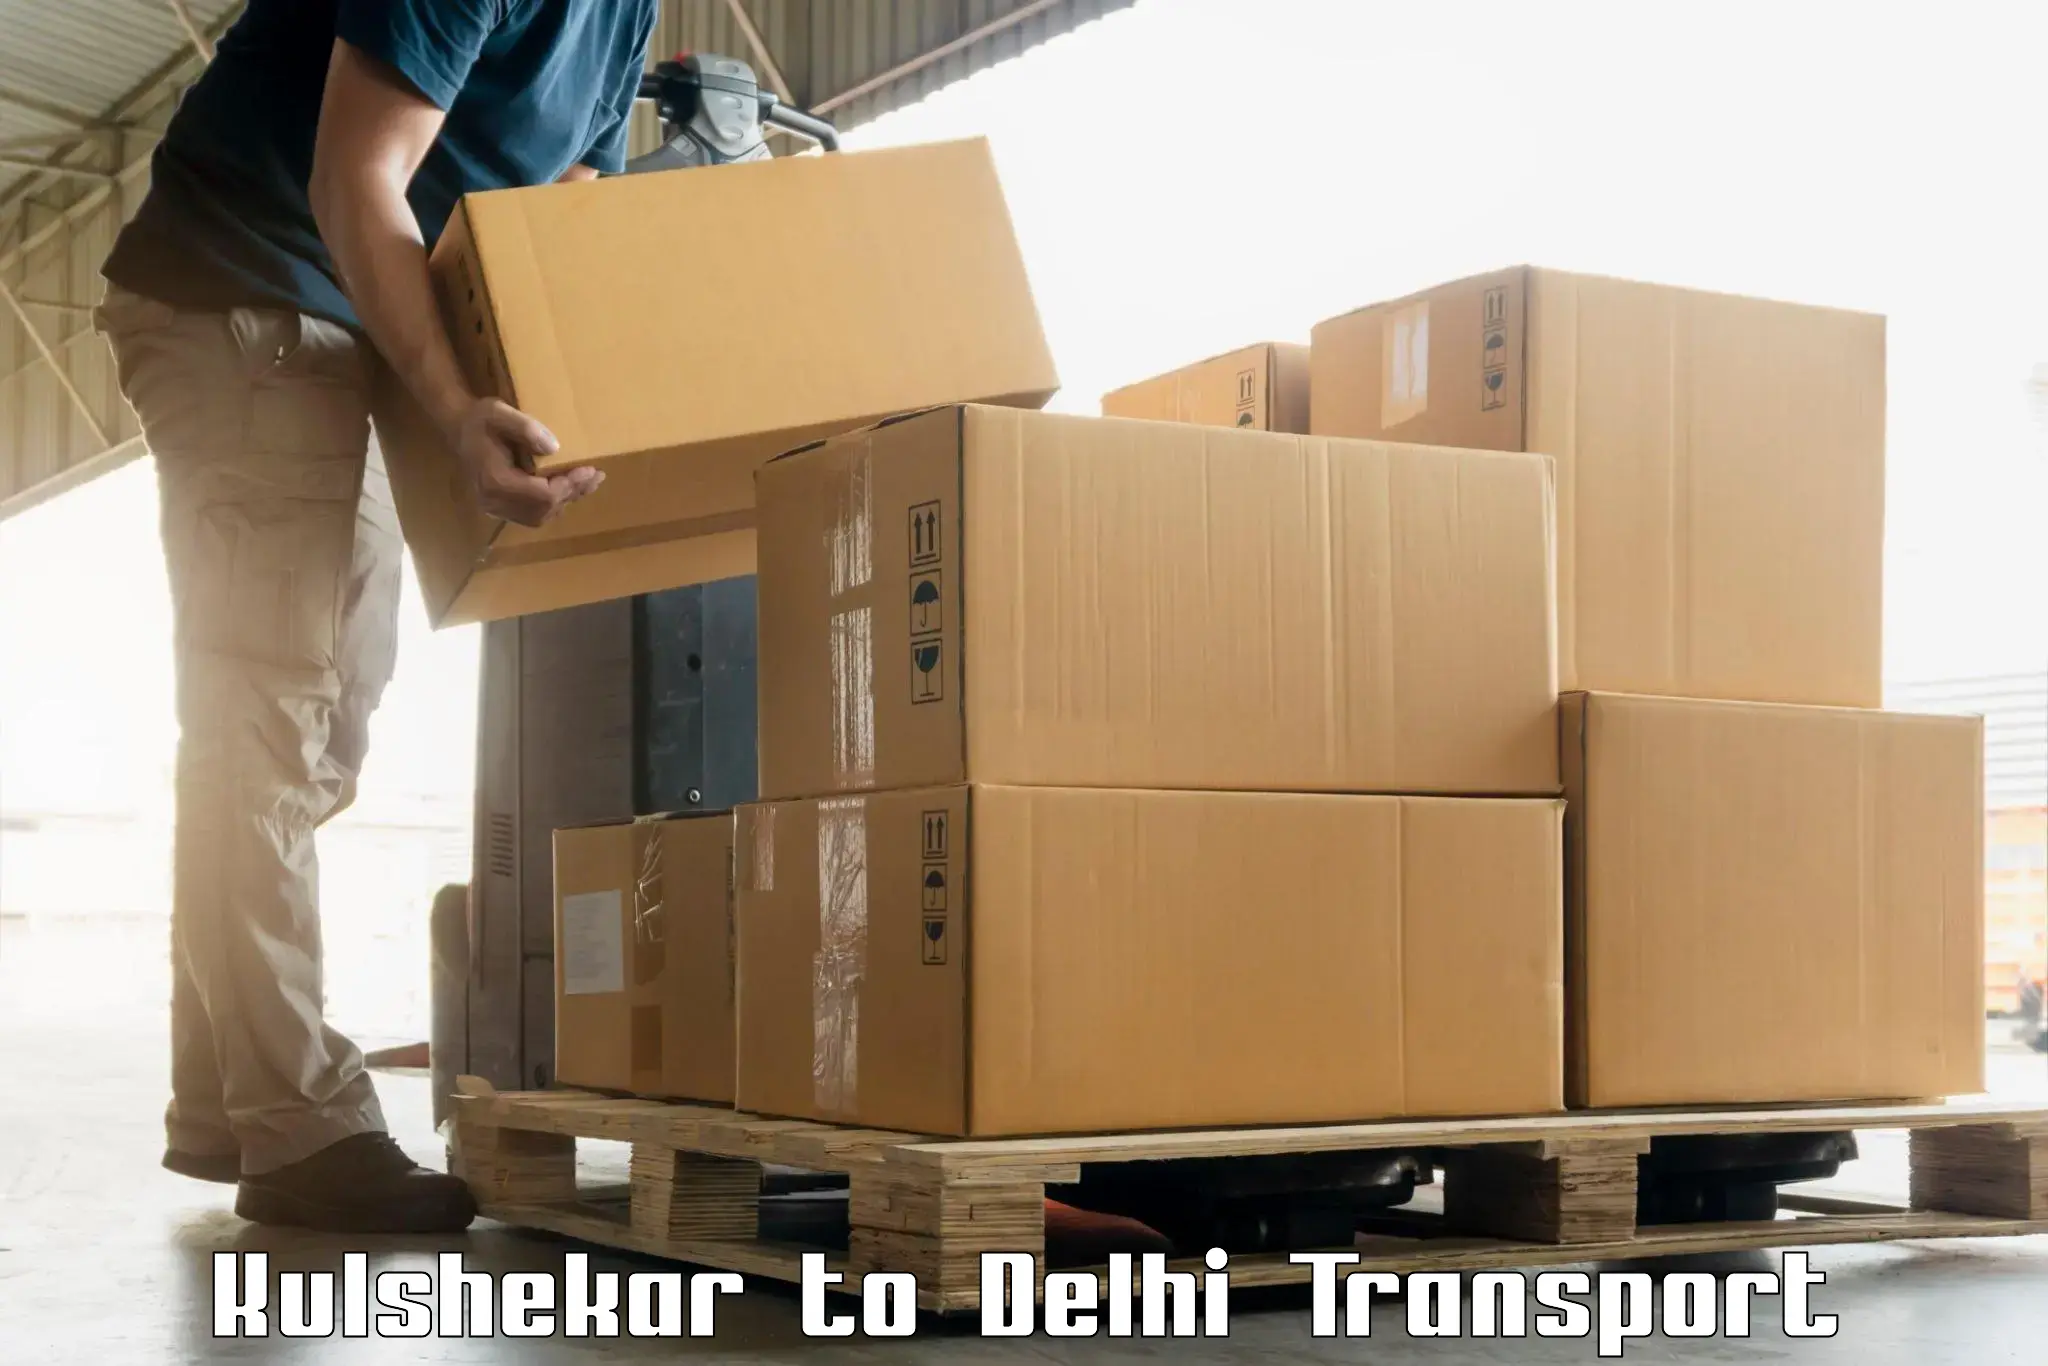 Land transport services Kulshekar to Jamia Millia Islamia New Delhi